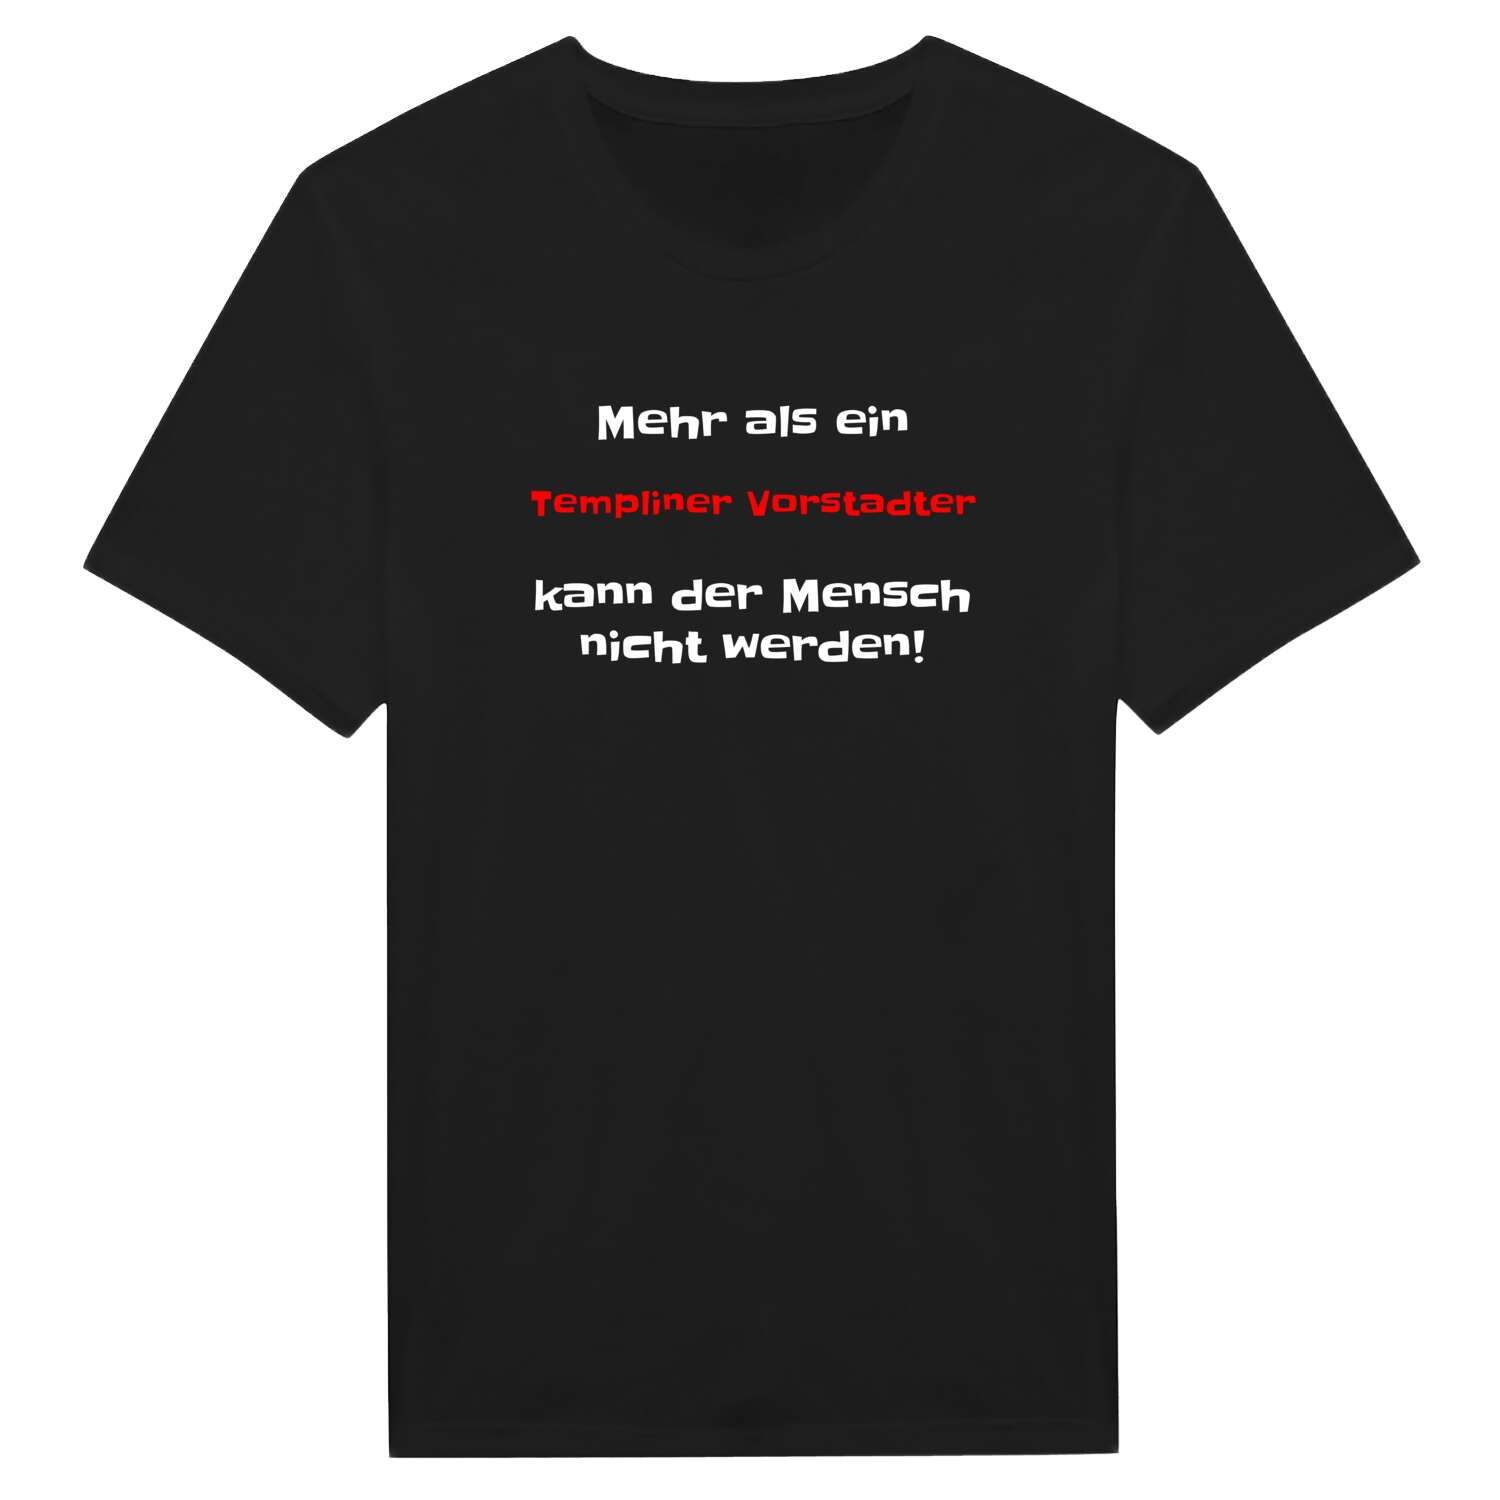 Templiner Vorstadt T-Shirt »Mehr als ein«